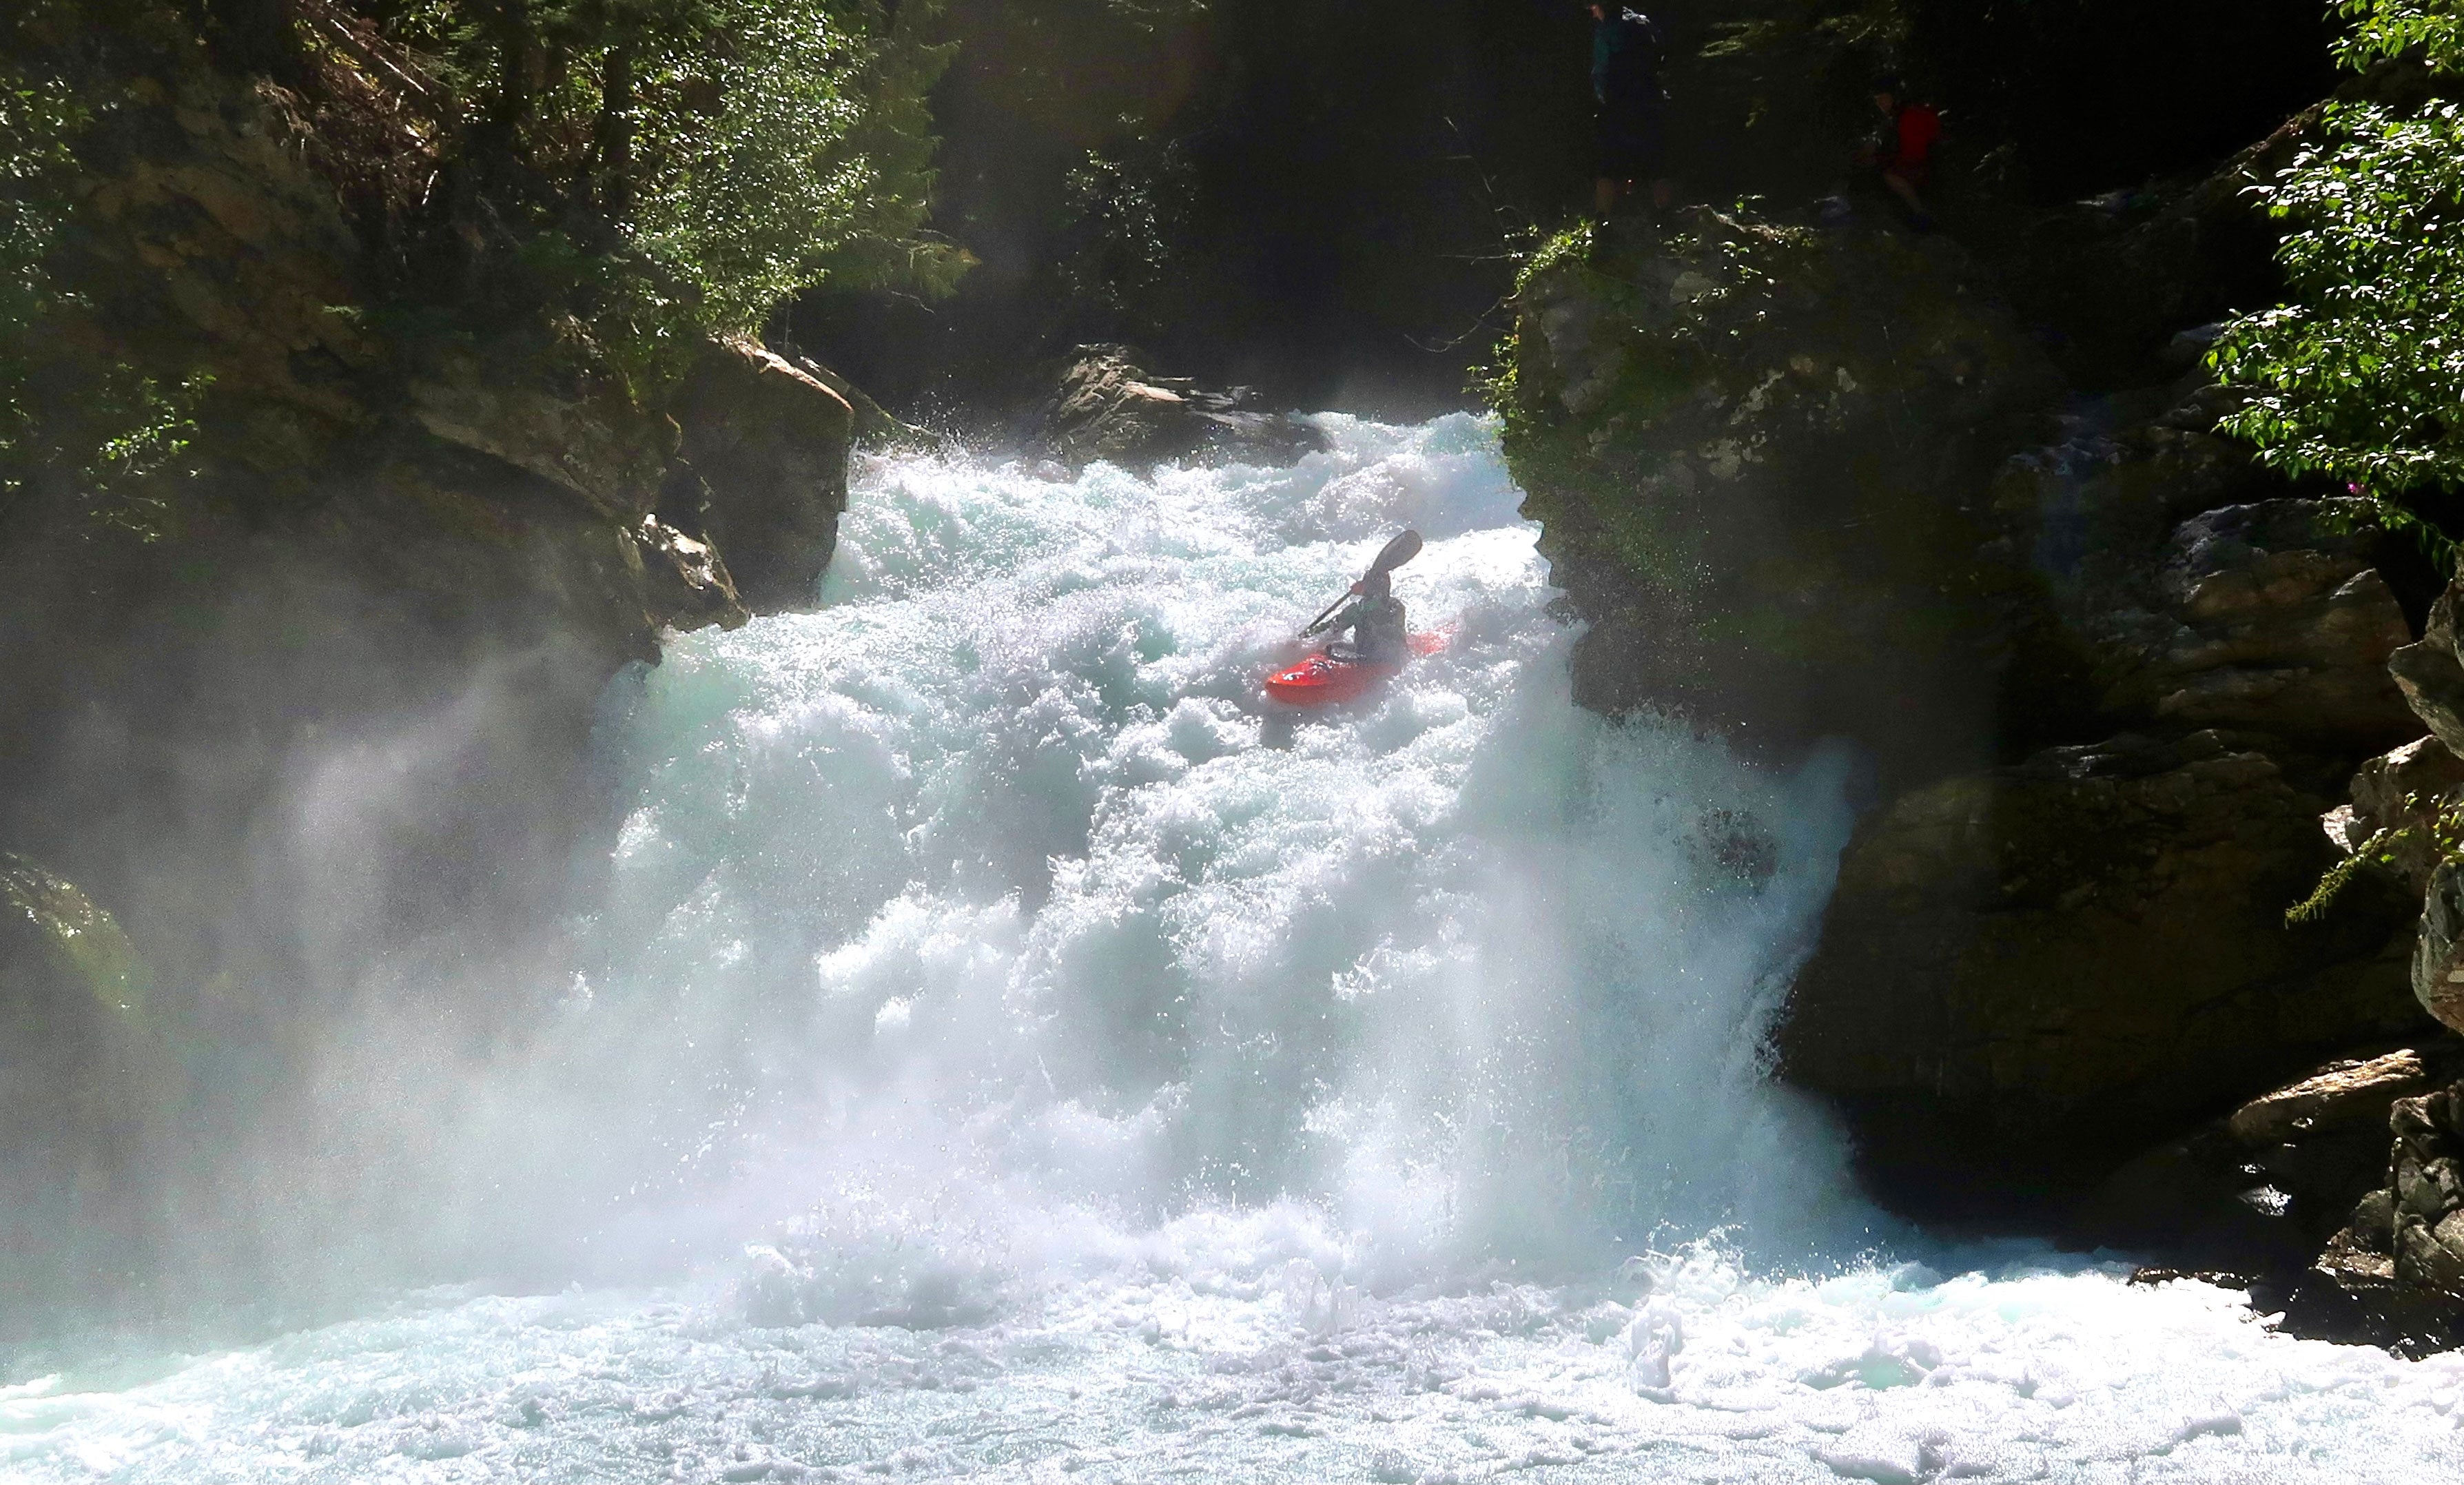 Taylor Cofer kayaking Trial Falls, Thunder Creek, WA.